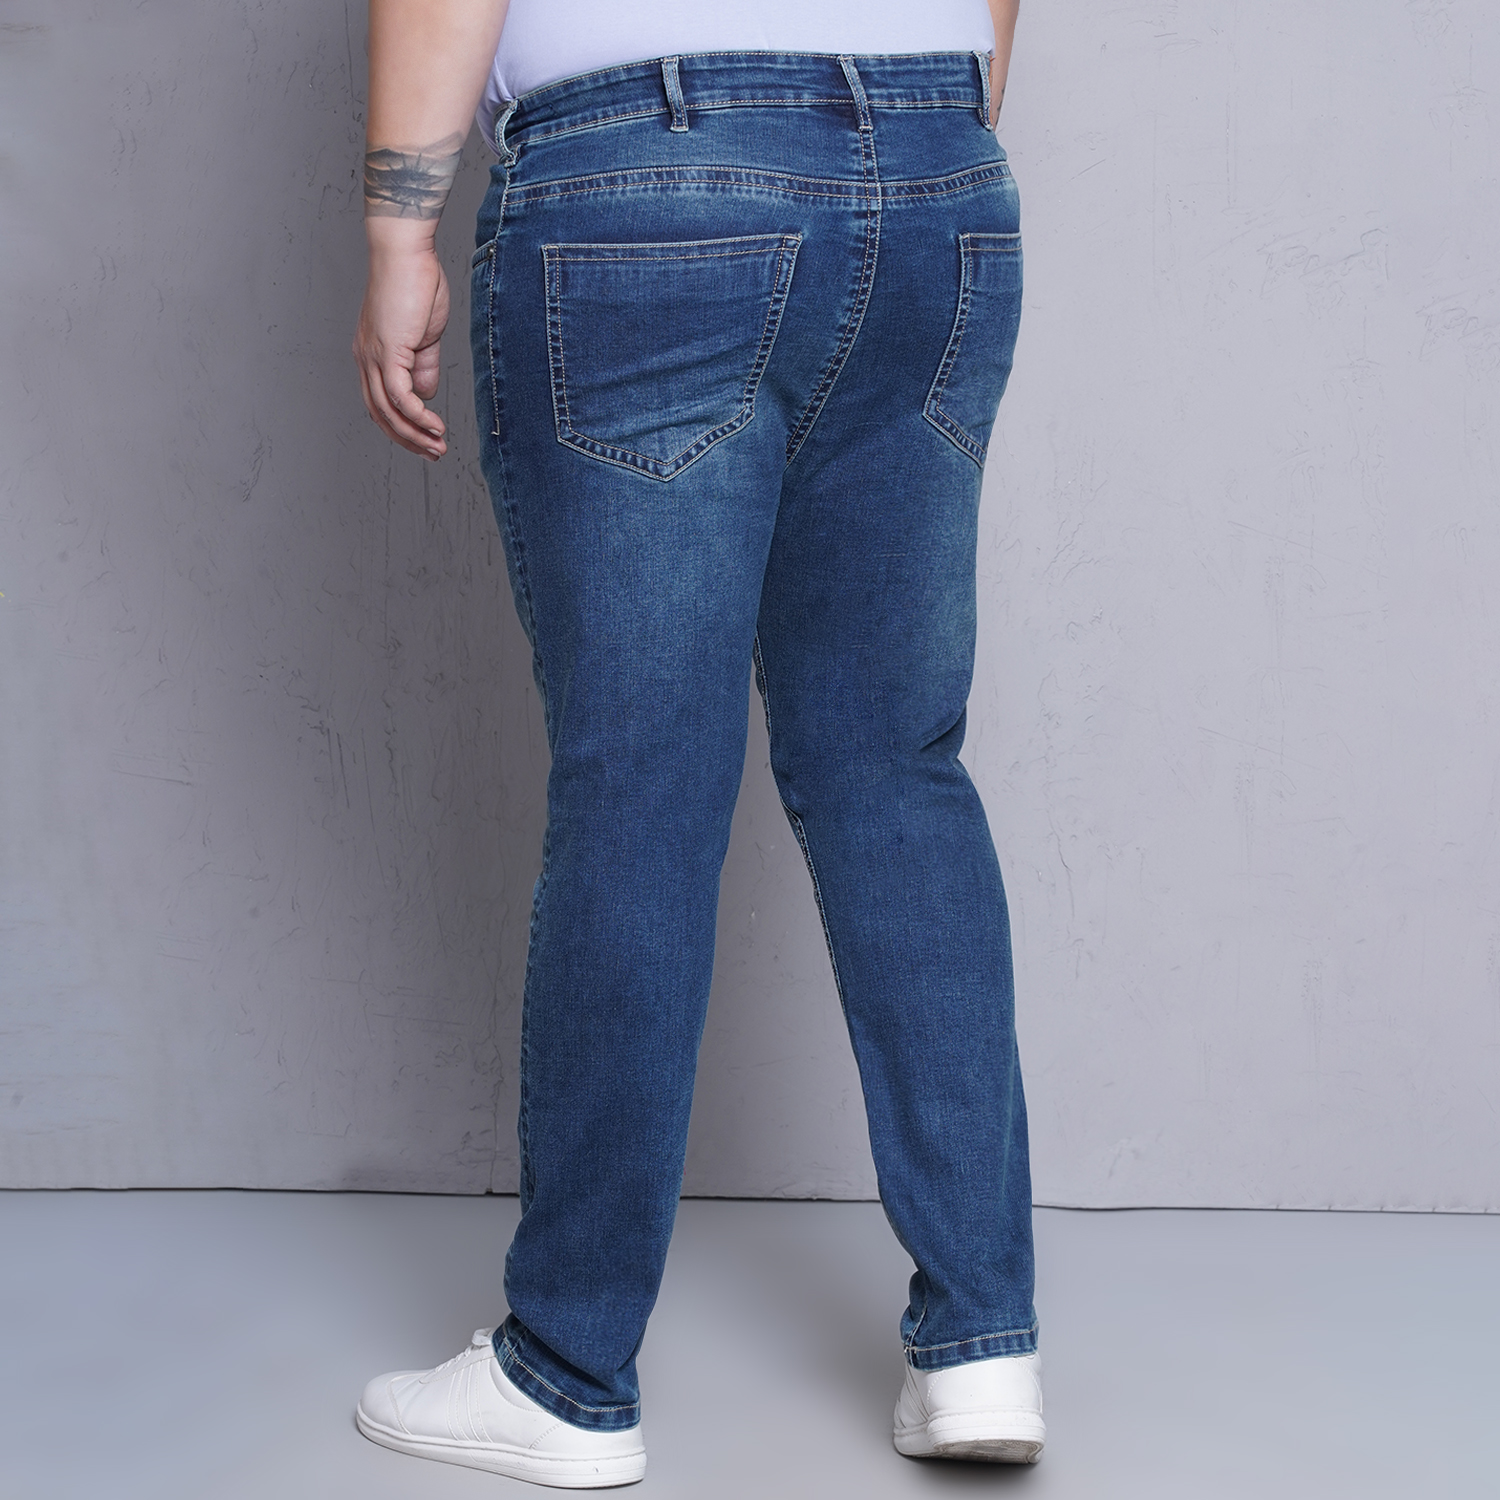 bottomwear/jeans/JPJ12437/jpj12437-5.jpg